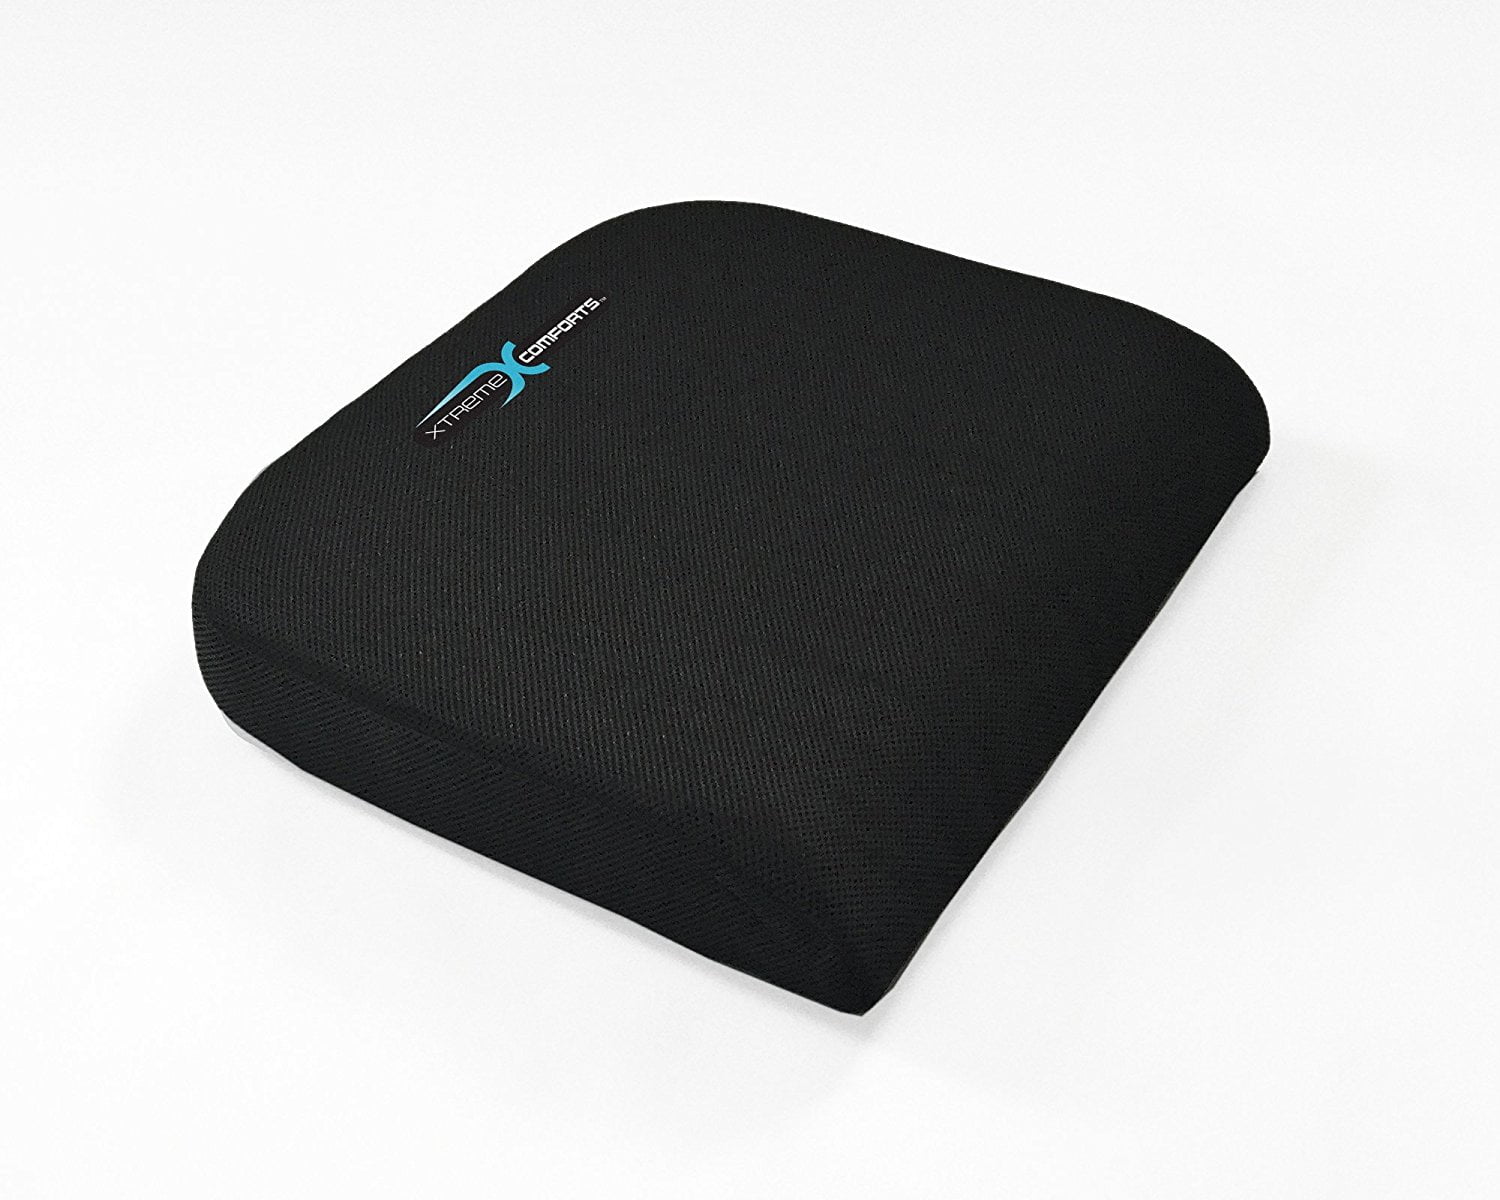 Xtreme Comforts Black Seat Cushion - 1 Large Padded Uganda